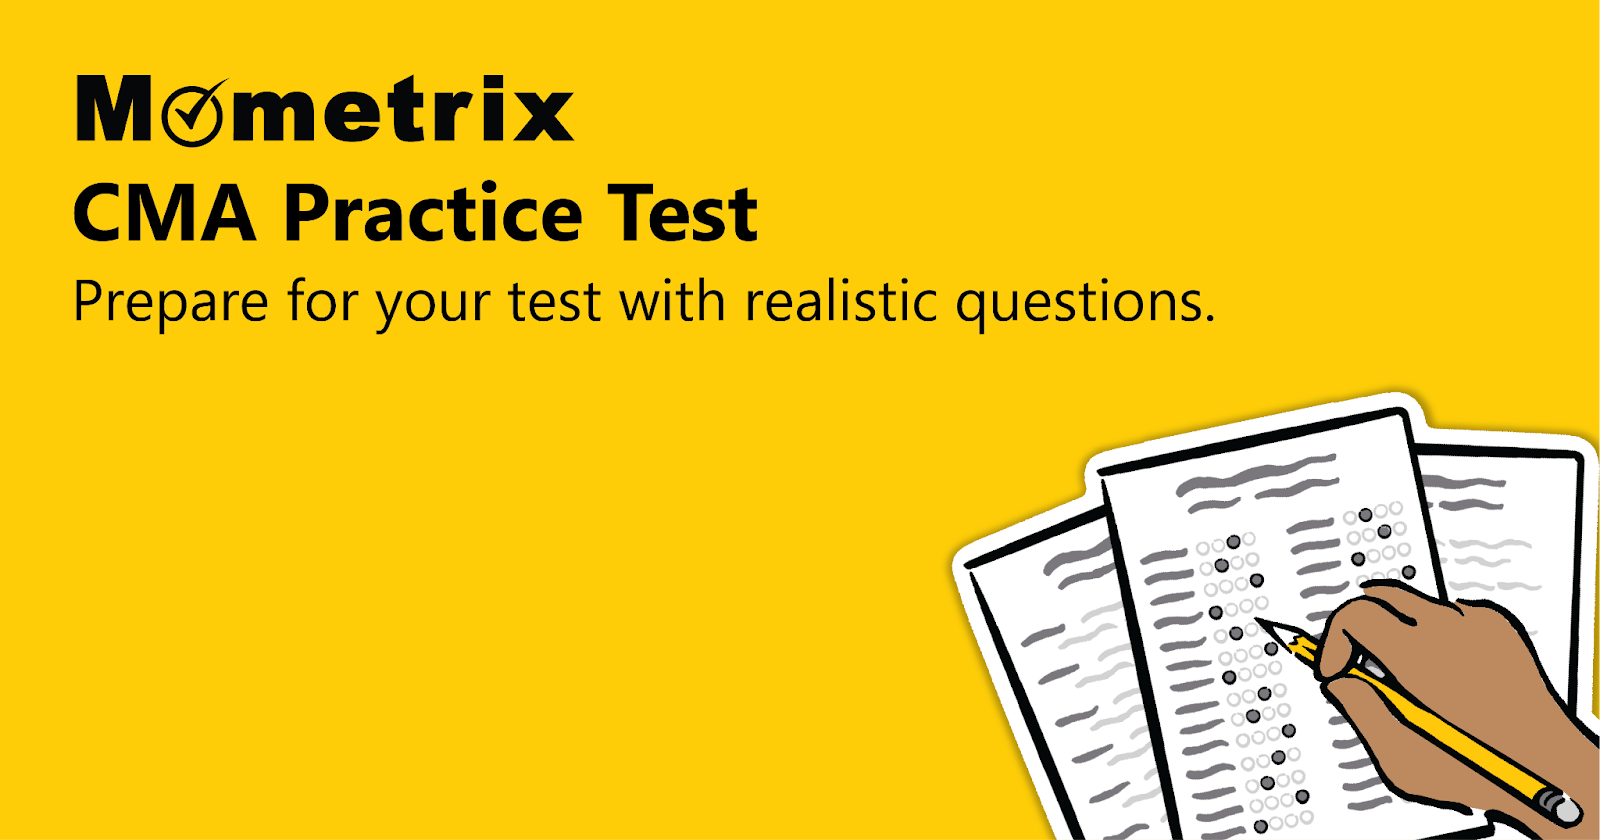 đề thi cma - Mometrix Test Preparation là trang web luyện thi CMA uy tín và chất lượng hàng đầu hiện nay